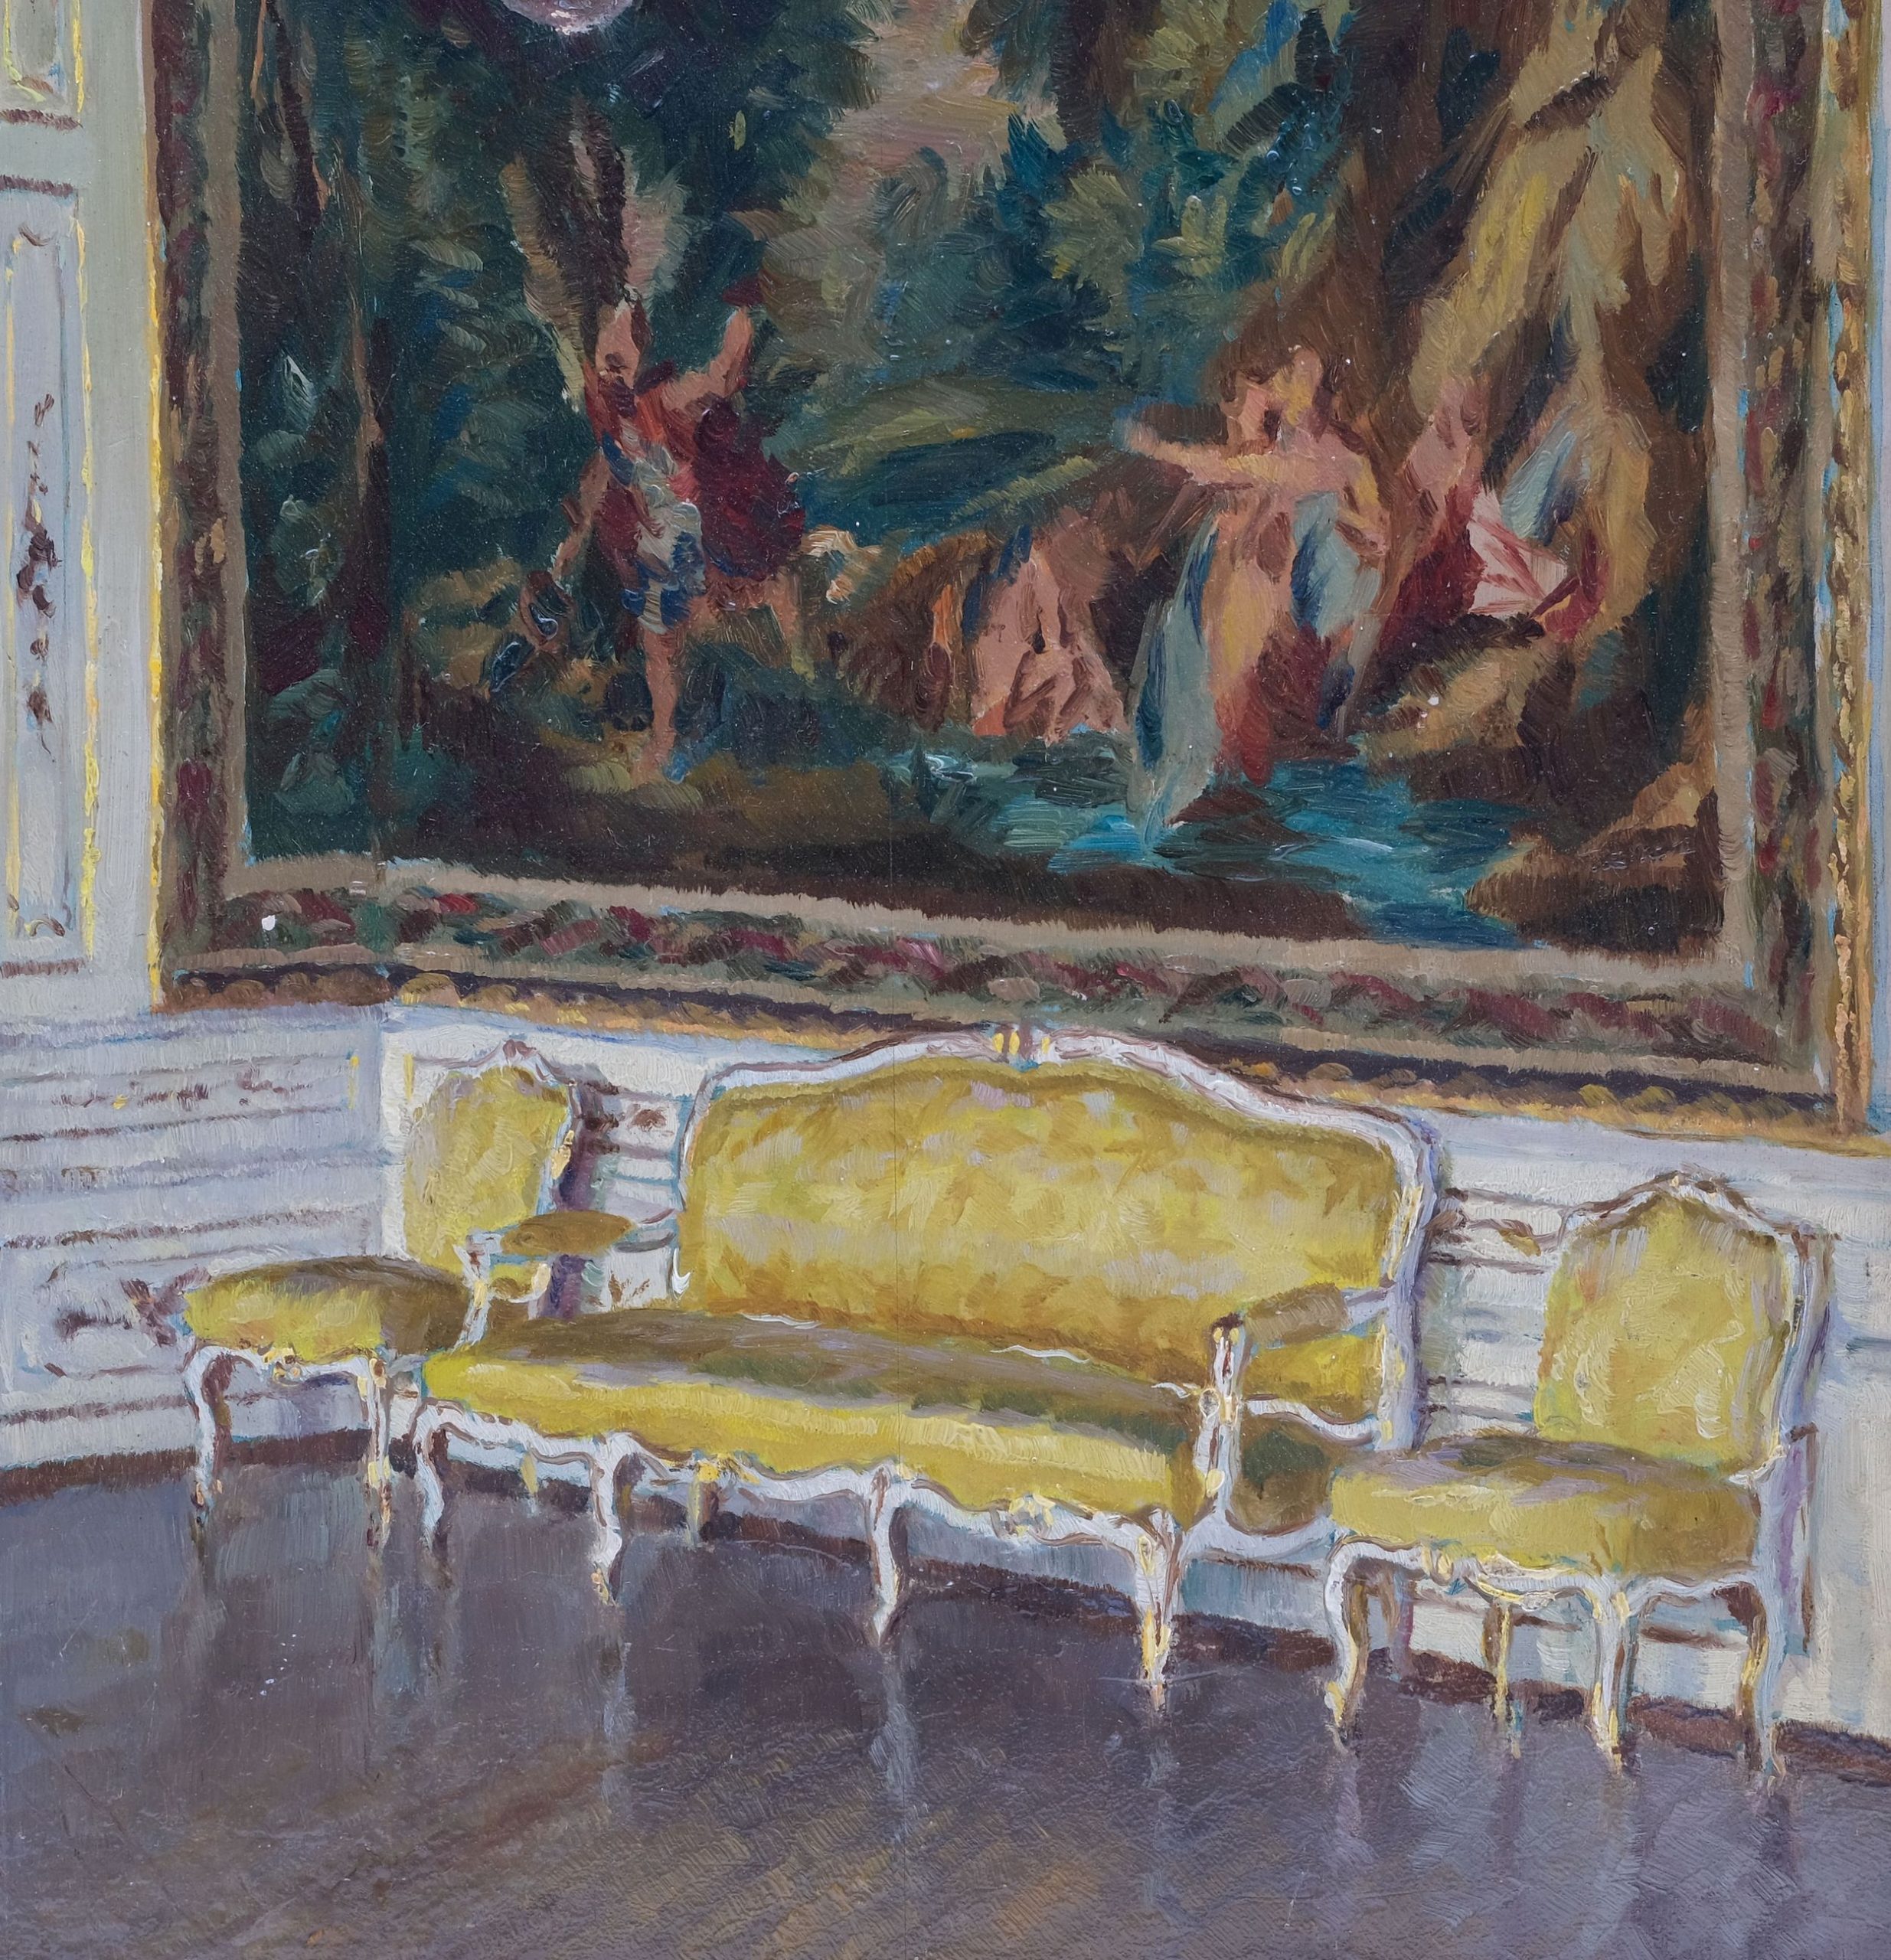 Gemälde Im Gobelinsaal von Schloss Bayreuth von Fritz Beckert, Dresden